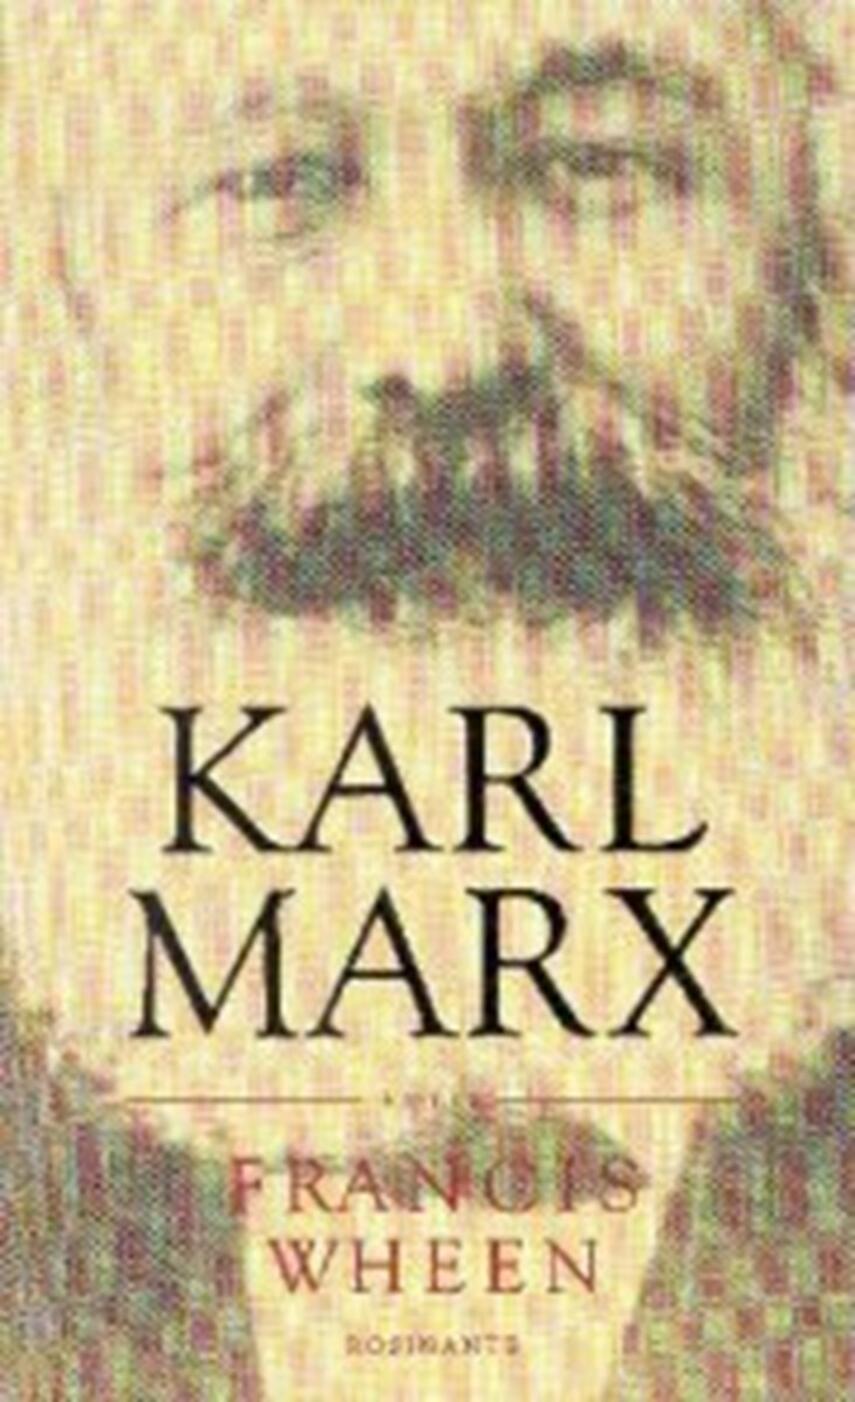 Francis Wheen: Karl Marx : et liv